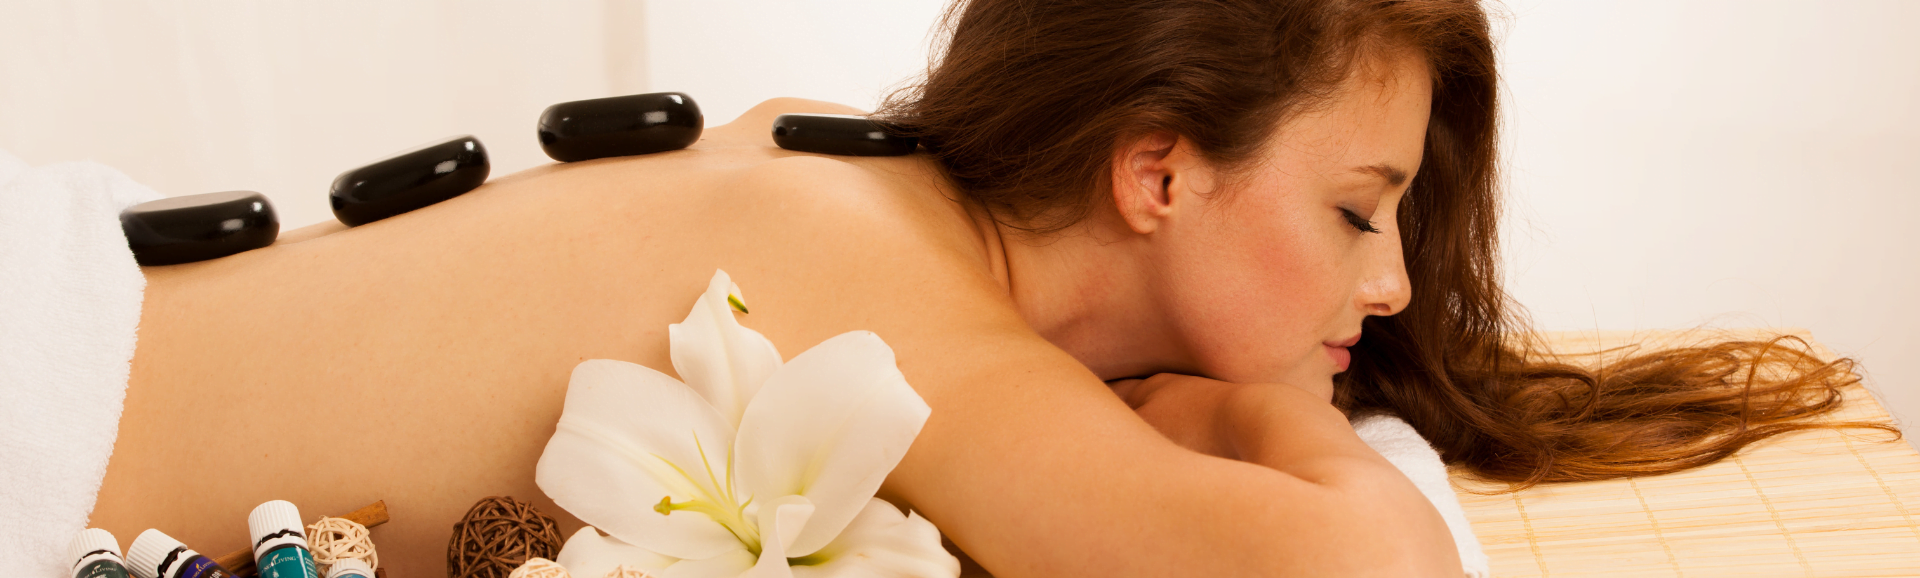 Com o Aperfeiçoamento Massagem Relaxante você aprende manobras e técnicas diferenciadas para fidelizar os clientes mais exigentes.